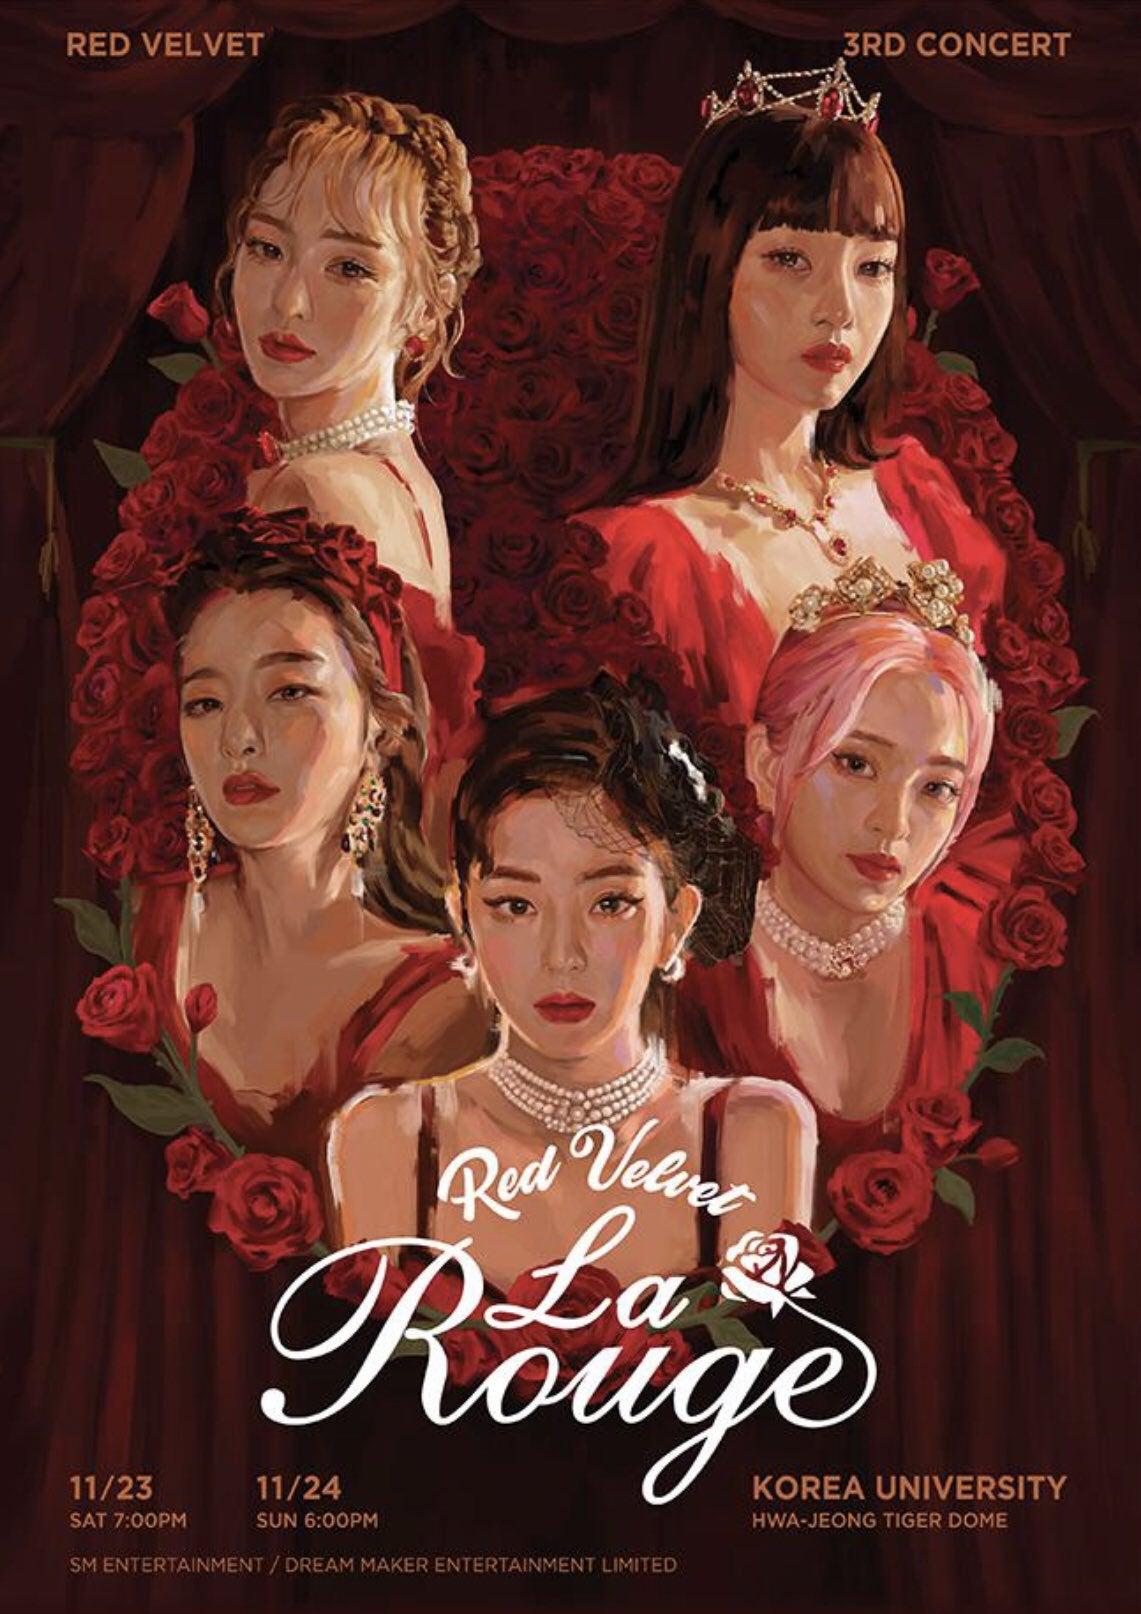 Red Velvet Rouge (Teaser Image 2 & Seating Plan)